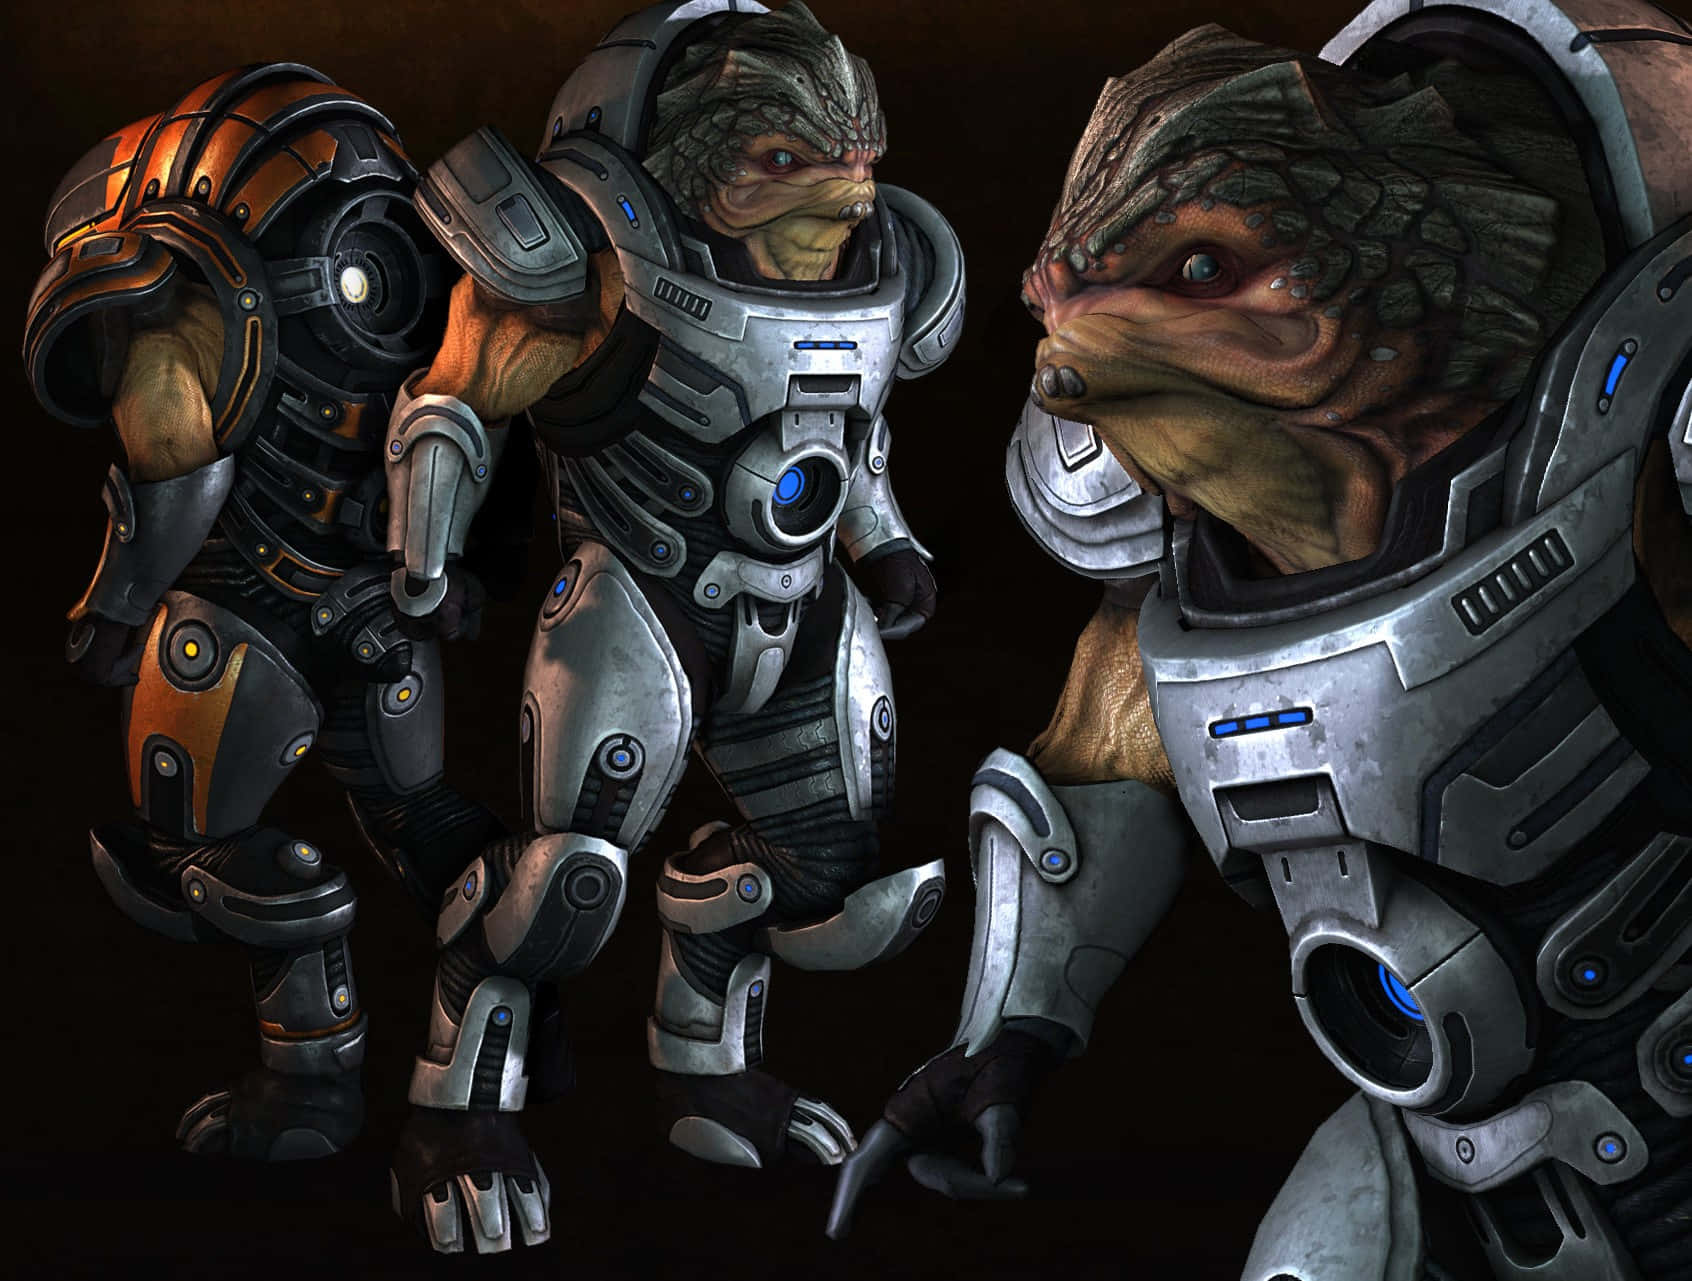 Grunt, the Krogan warrior, standing tall in a Mass Effect game scene. Wallpaper